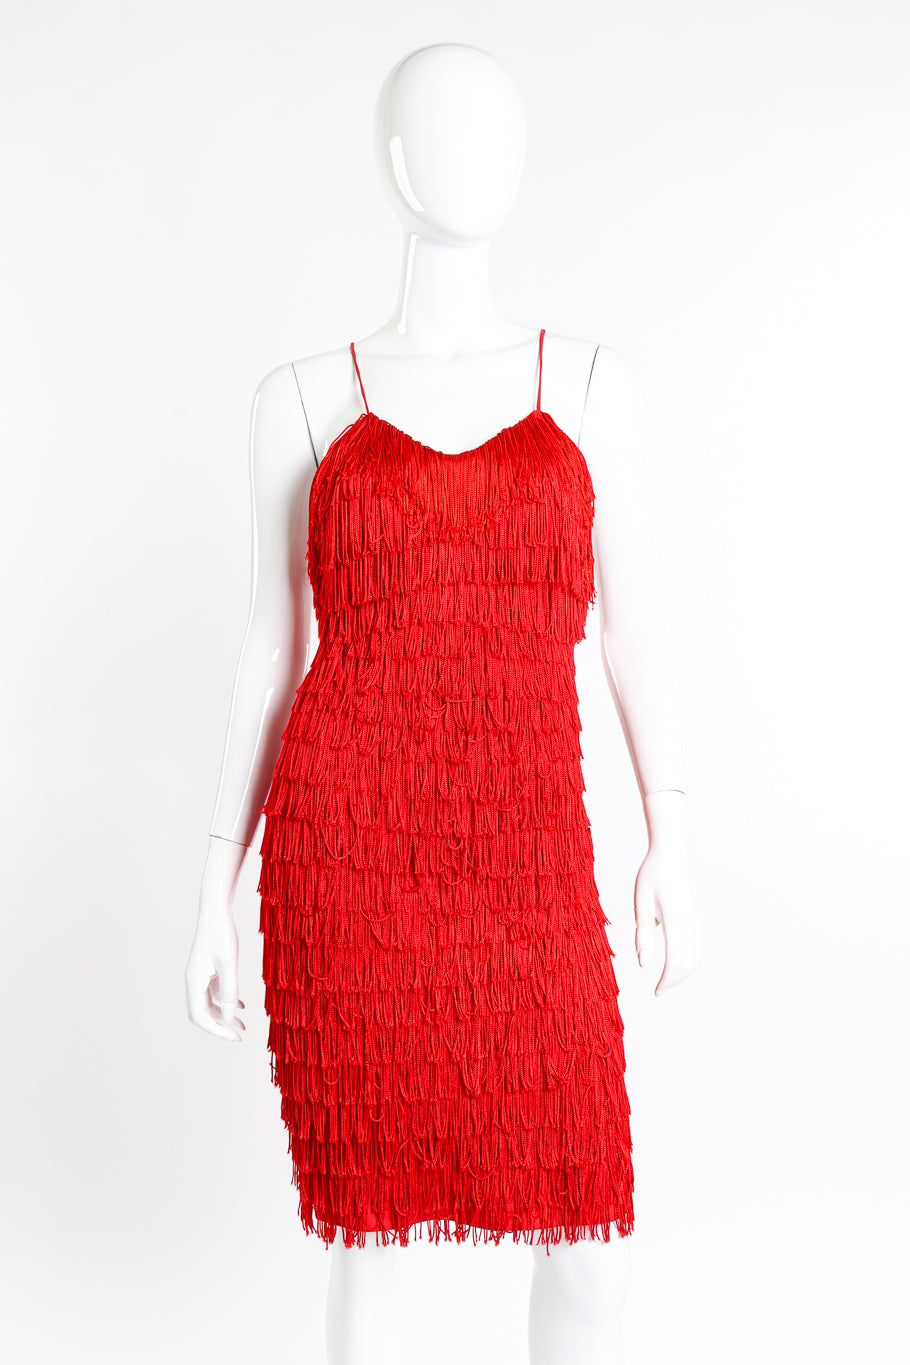 Katharine Hamnett Backless Fringe Dress front on mannequin @recessla